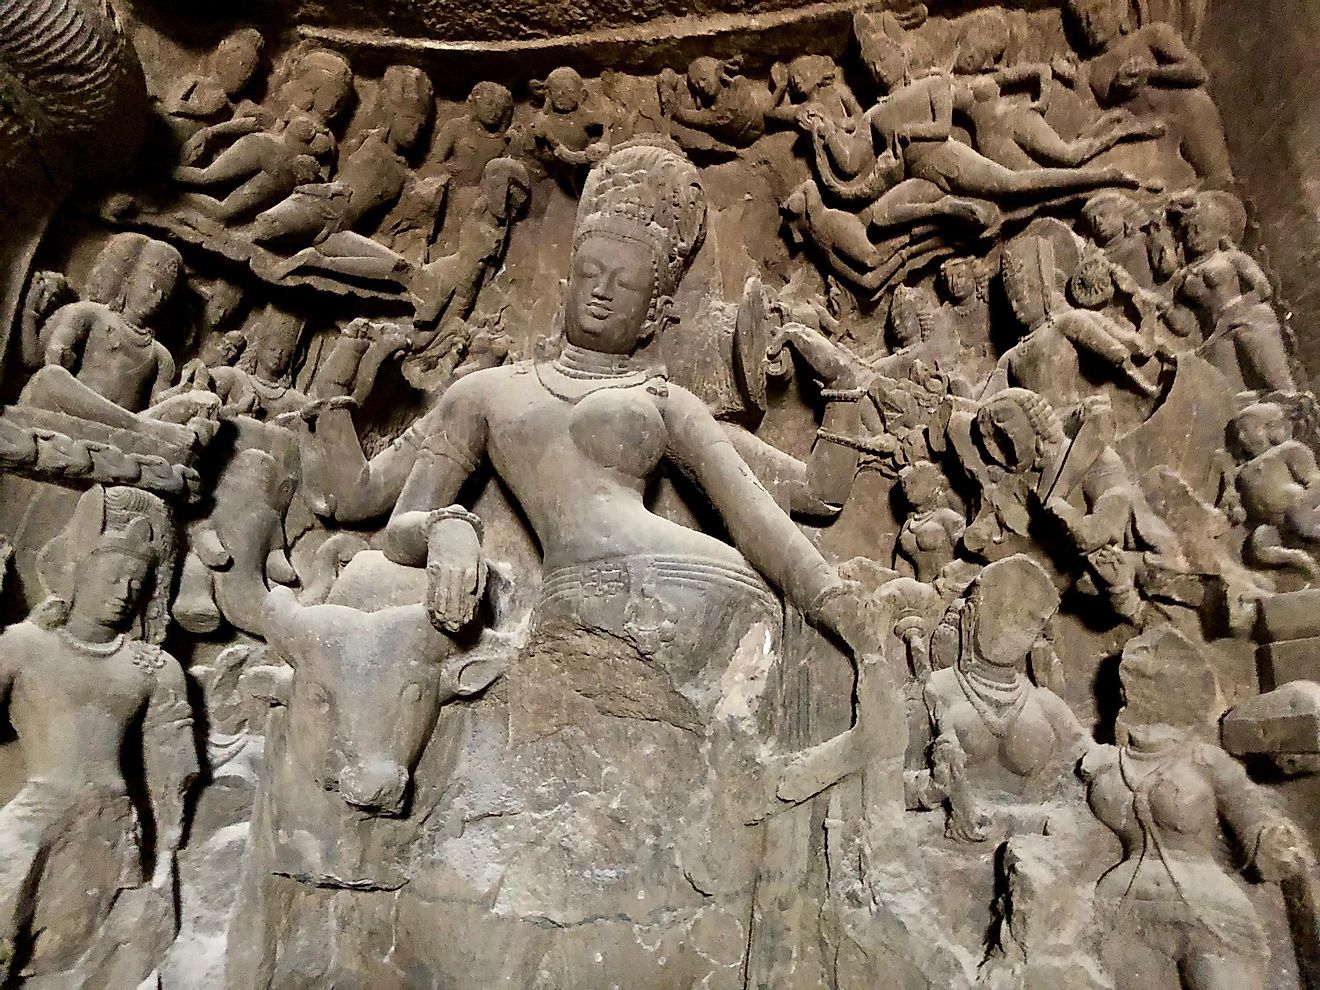 Hindu mythology finds expression in rock art, the Elephanta Caves. Image credit: Arijit Nag.